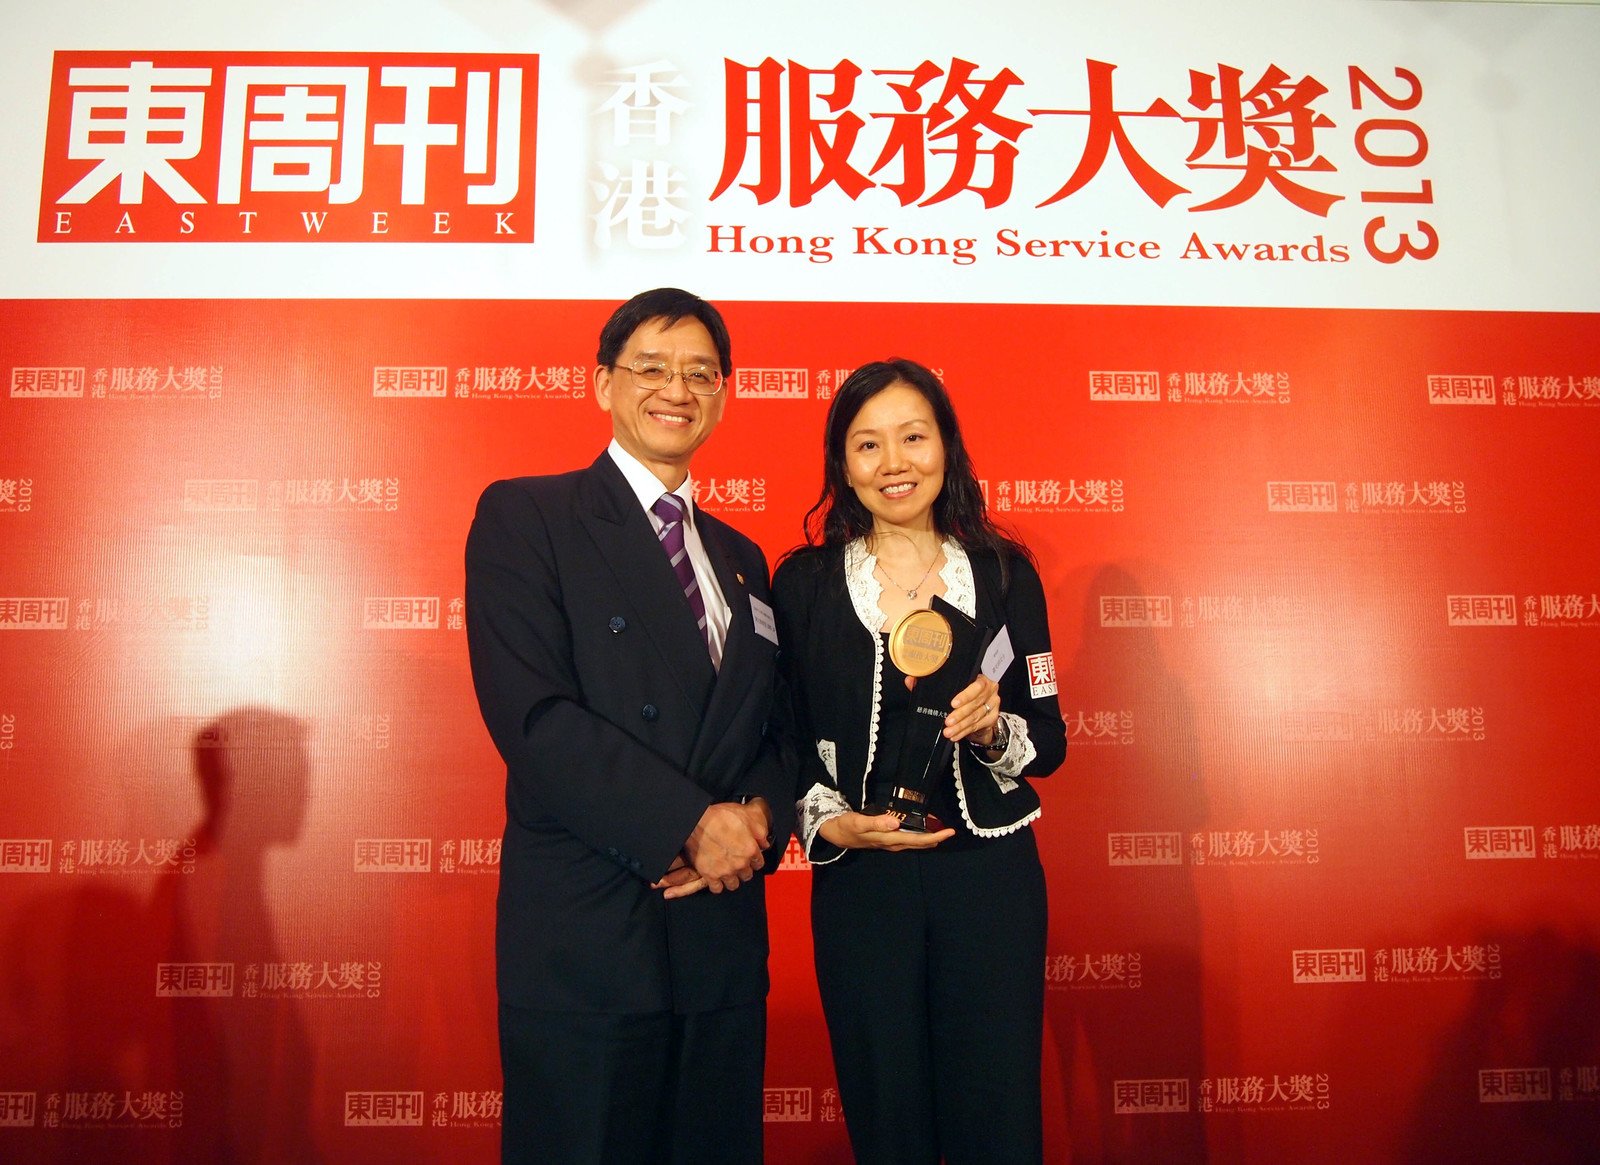 乐施会筹款及传讯总监萧美娟女士与香港中文大学EMBA课程主任陈志辉教授于颁奖礼上合照。